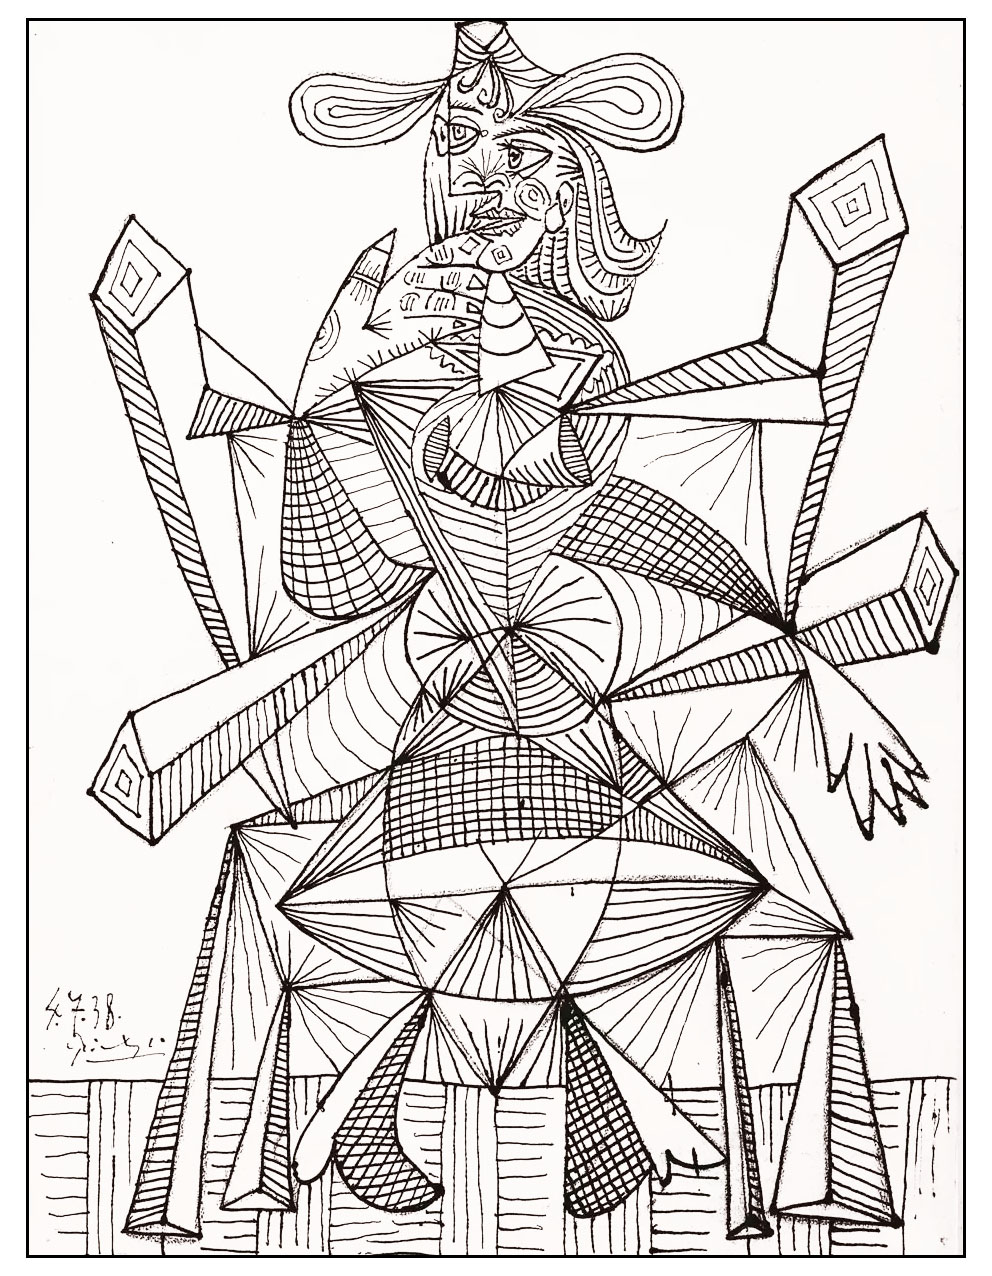 Eine Zeichnung des großen Pablo Picasso, perfekt für eine künstlerische Malvorlage!